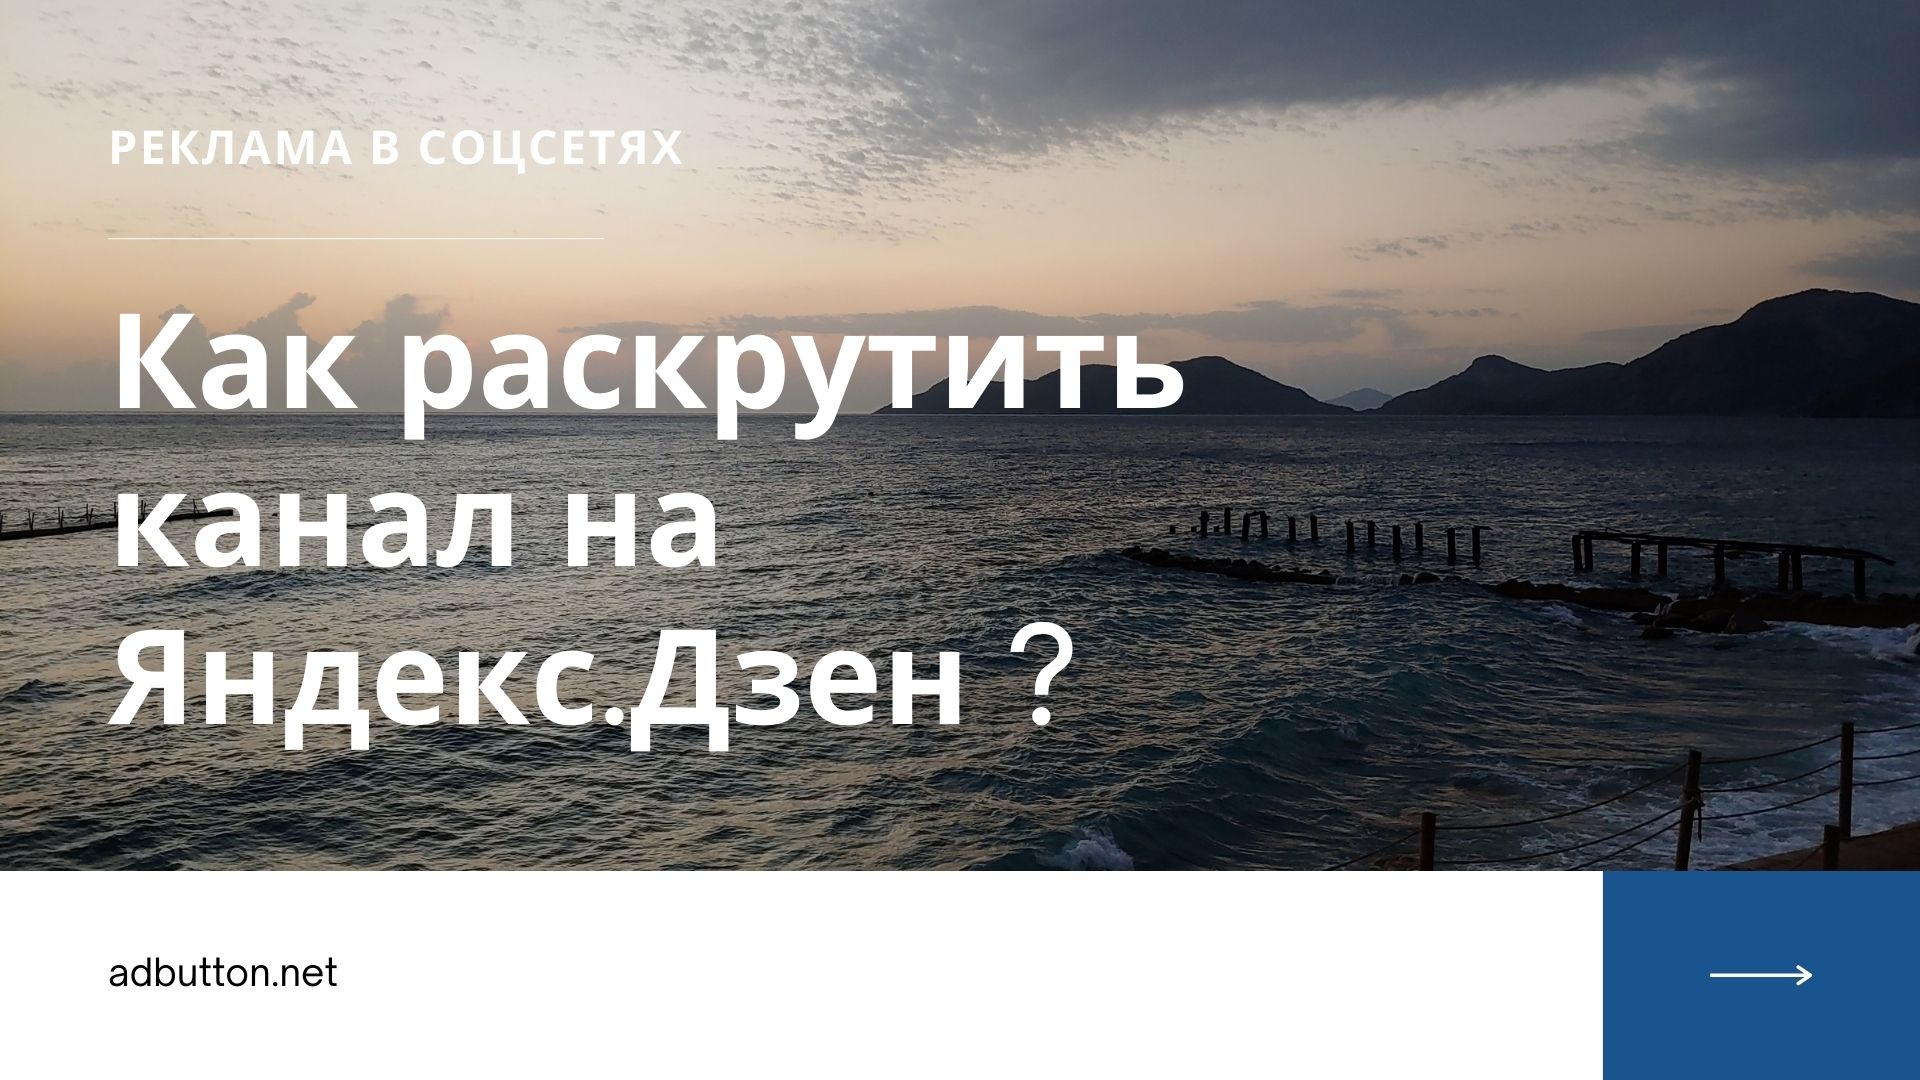 Как раскрутить канал на Яндекс.Дзен и заработать на подписчиках?